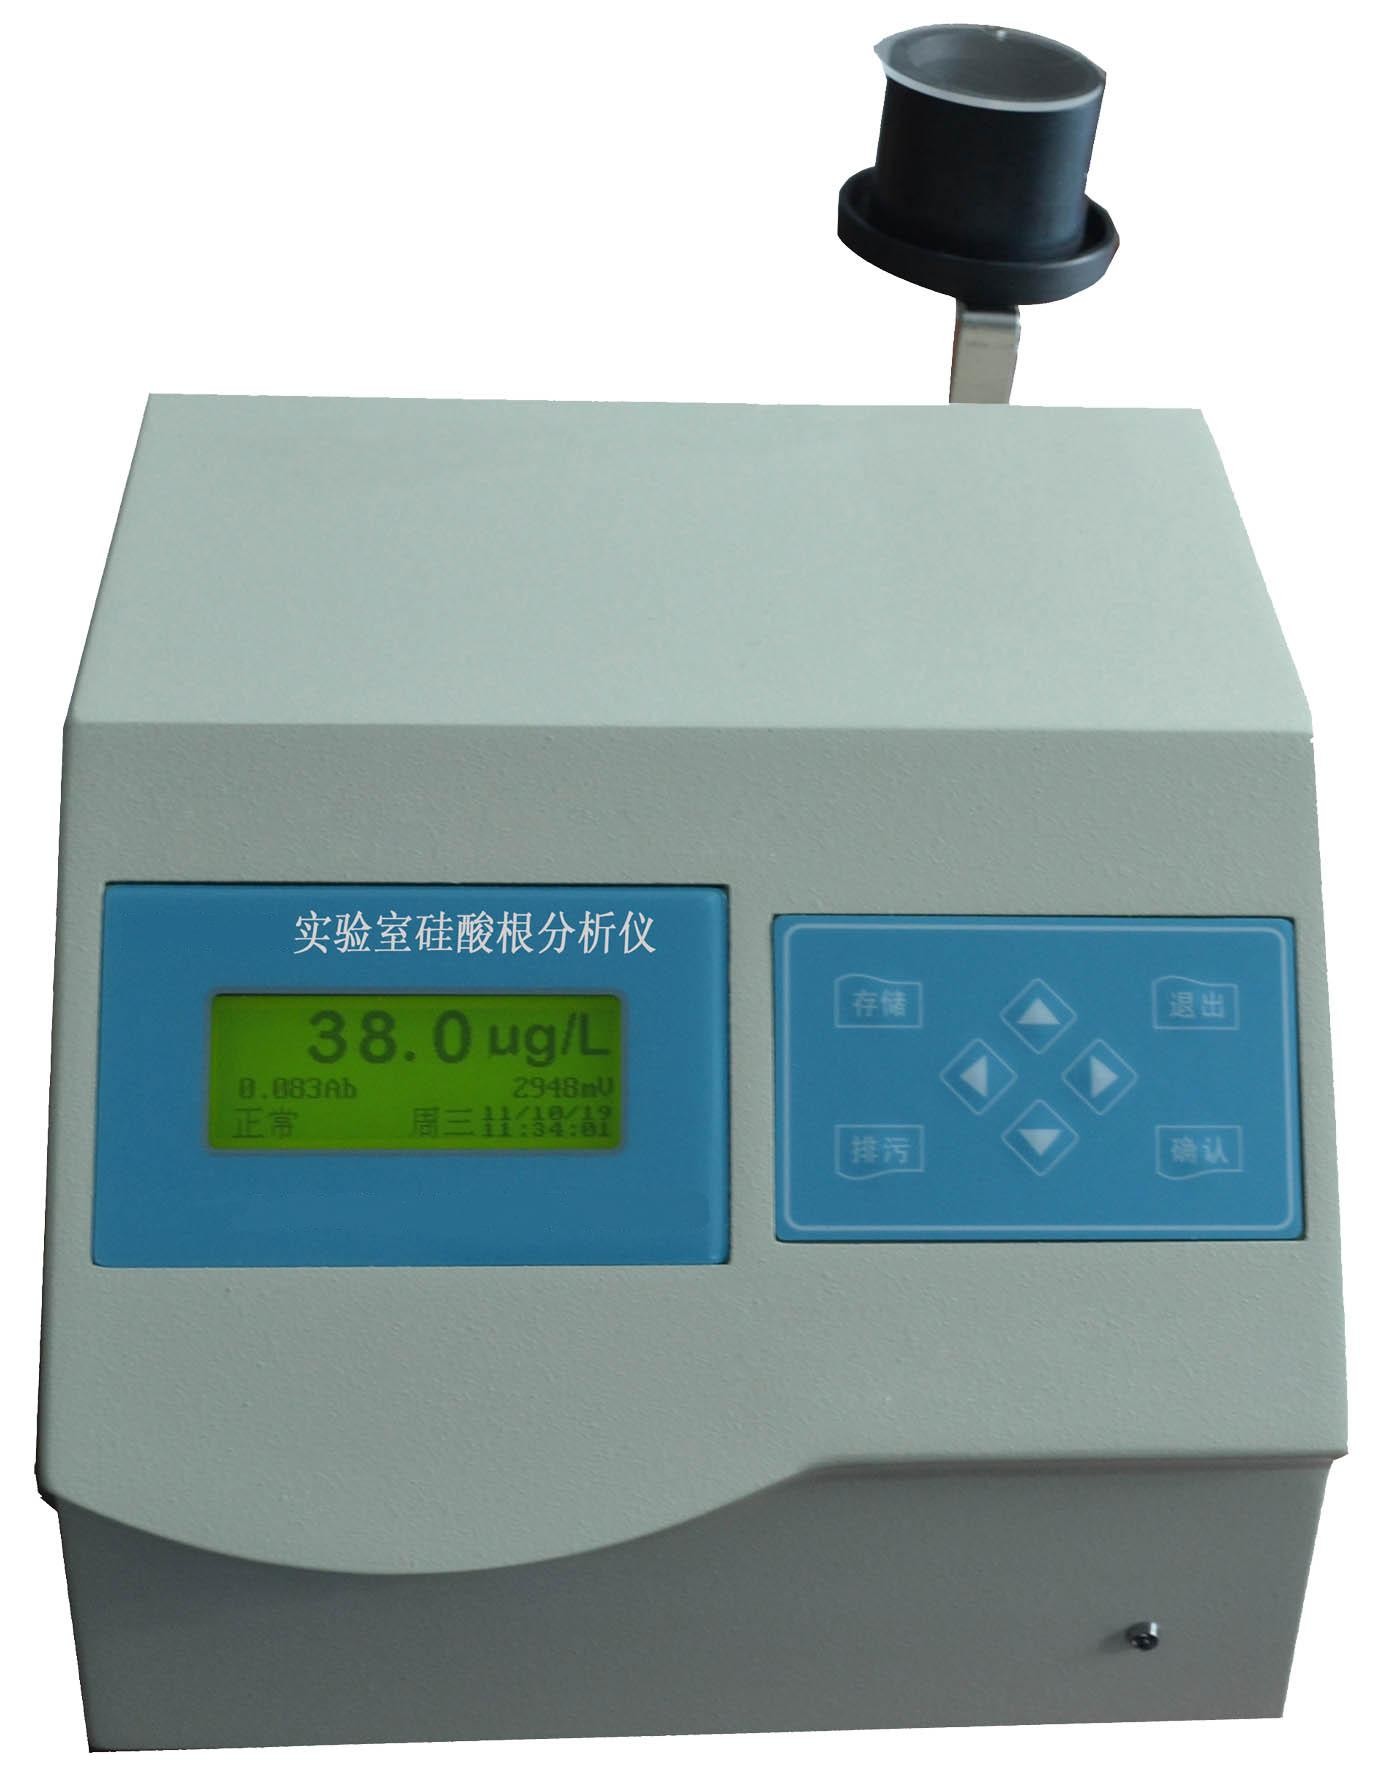 SGS-206实验室硅酸根分析仪